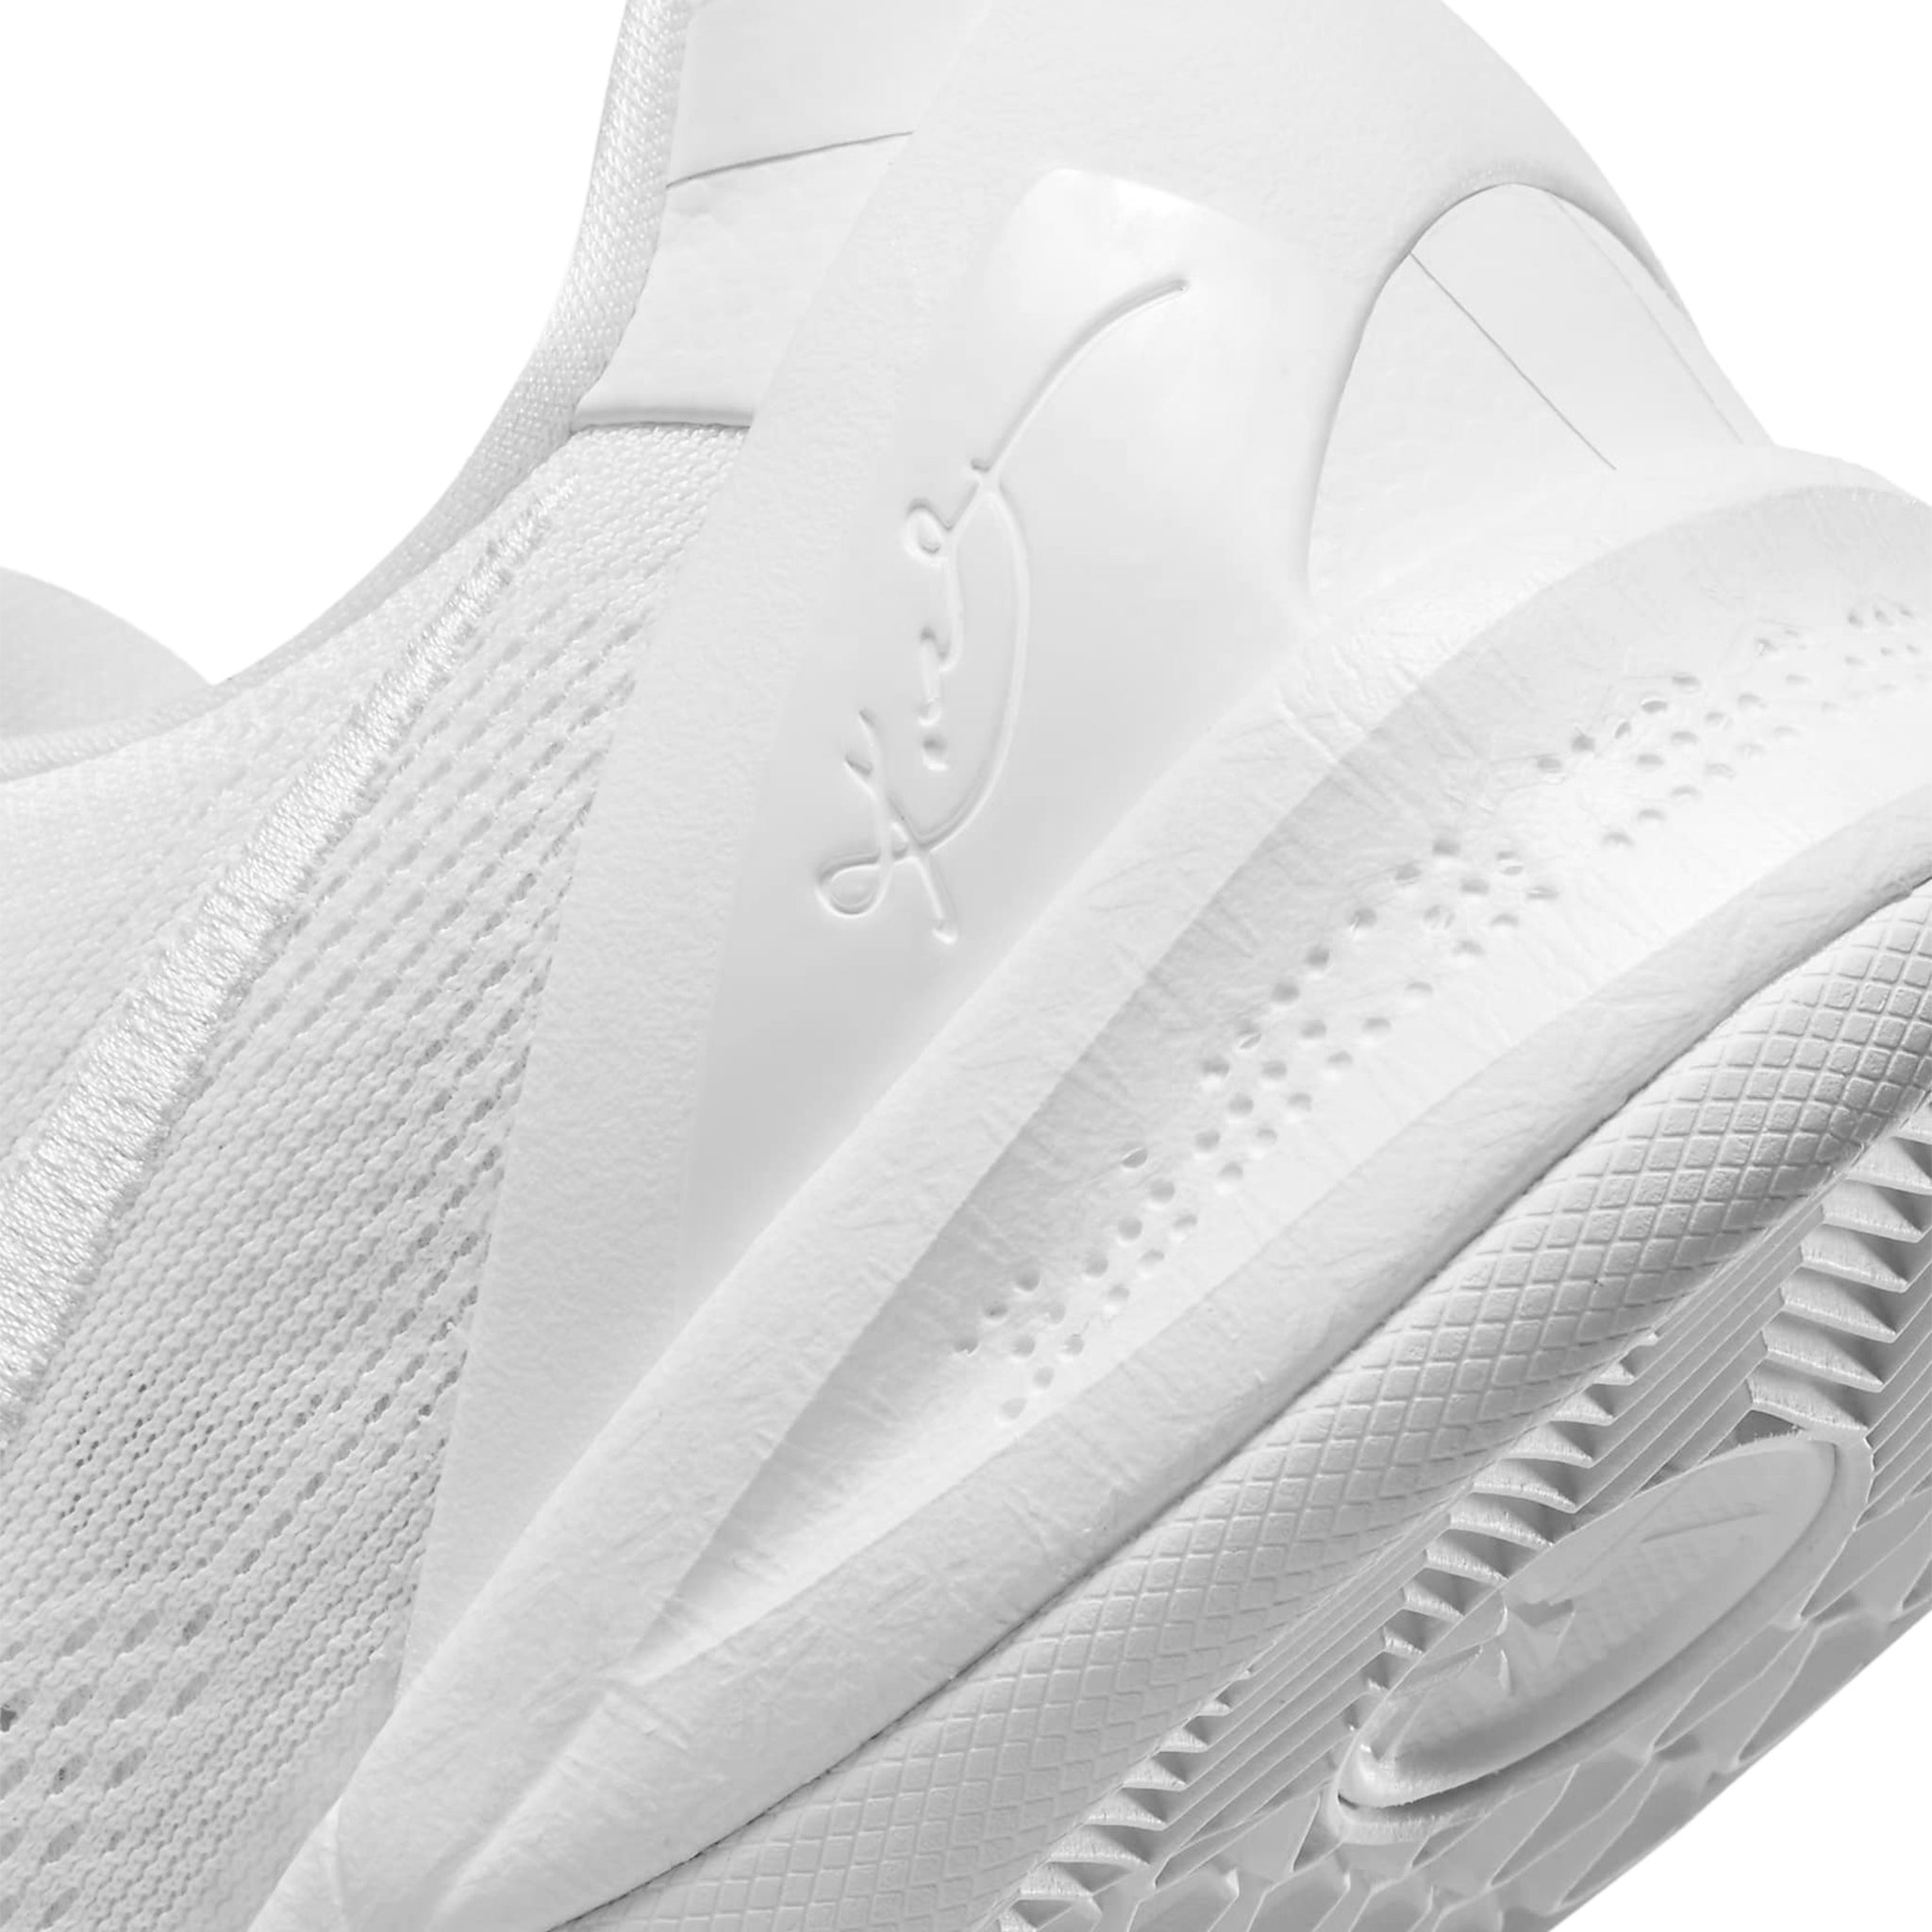 Heel view of Nike Zoom Kobe 8 Protro Halo White FJ9364-100